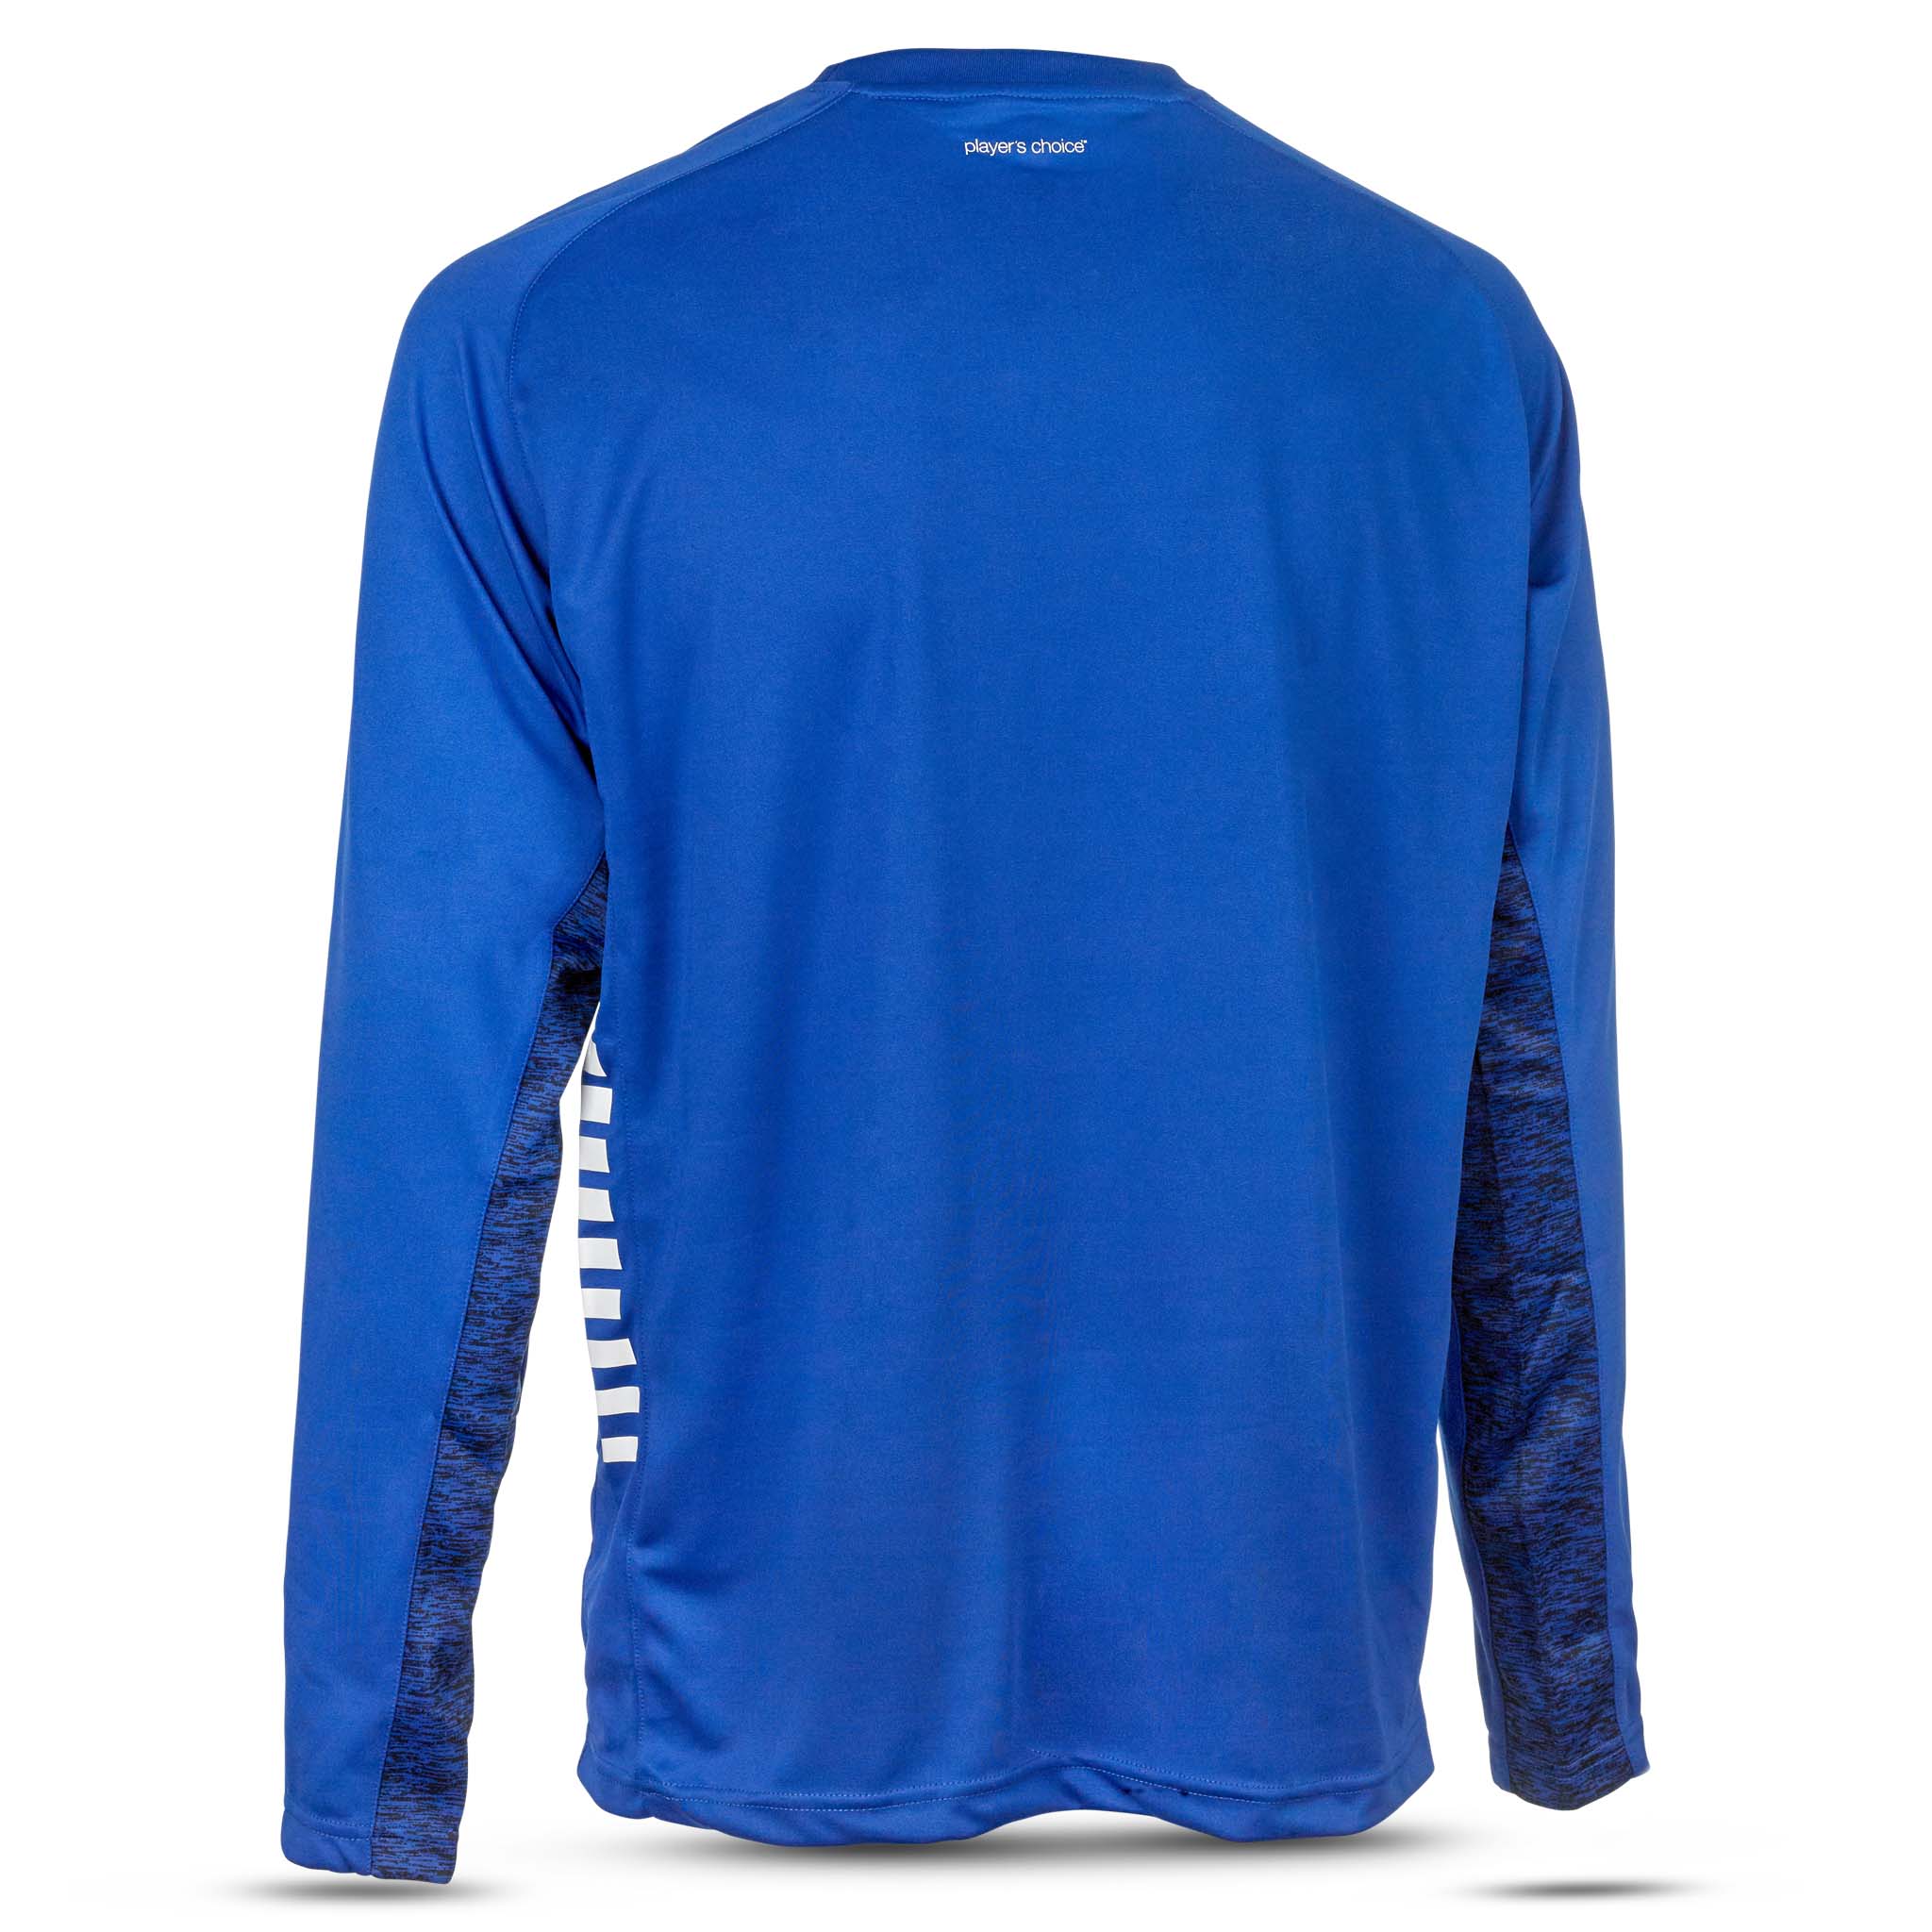 Spain Träning sweatshirt - Barn #färg_blå